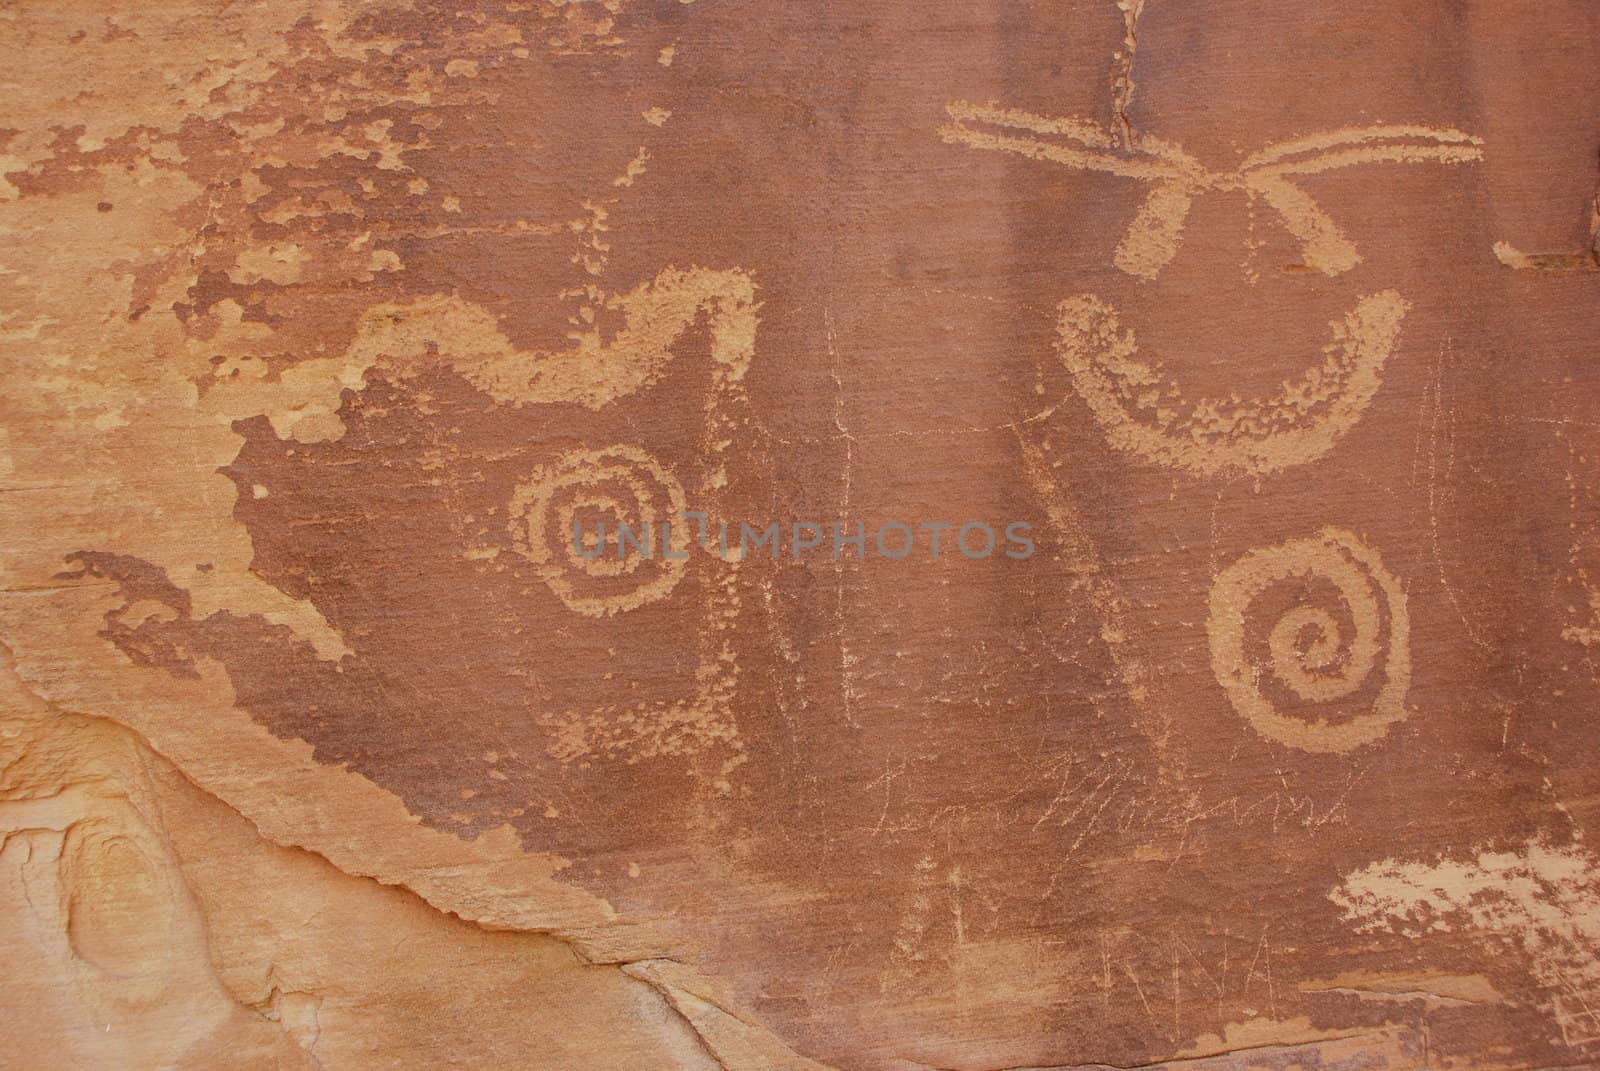 Petroglyphs on a canyon wall